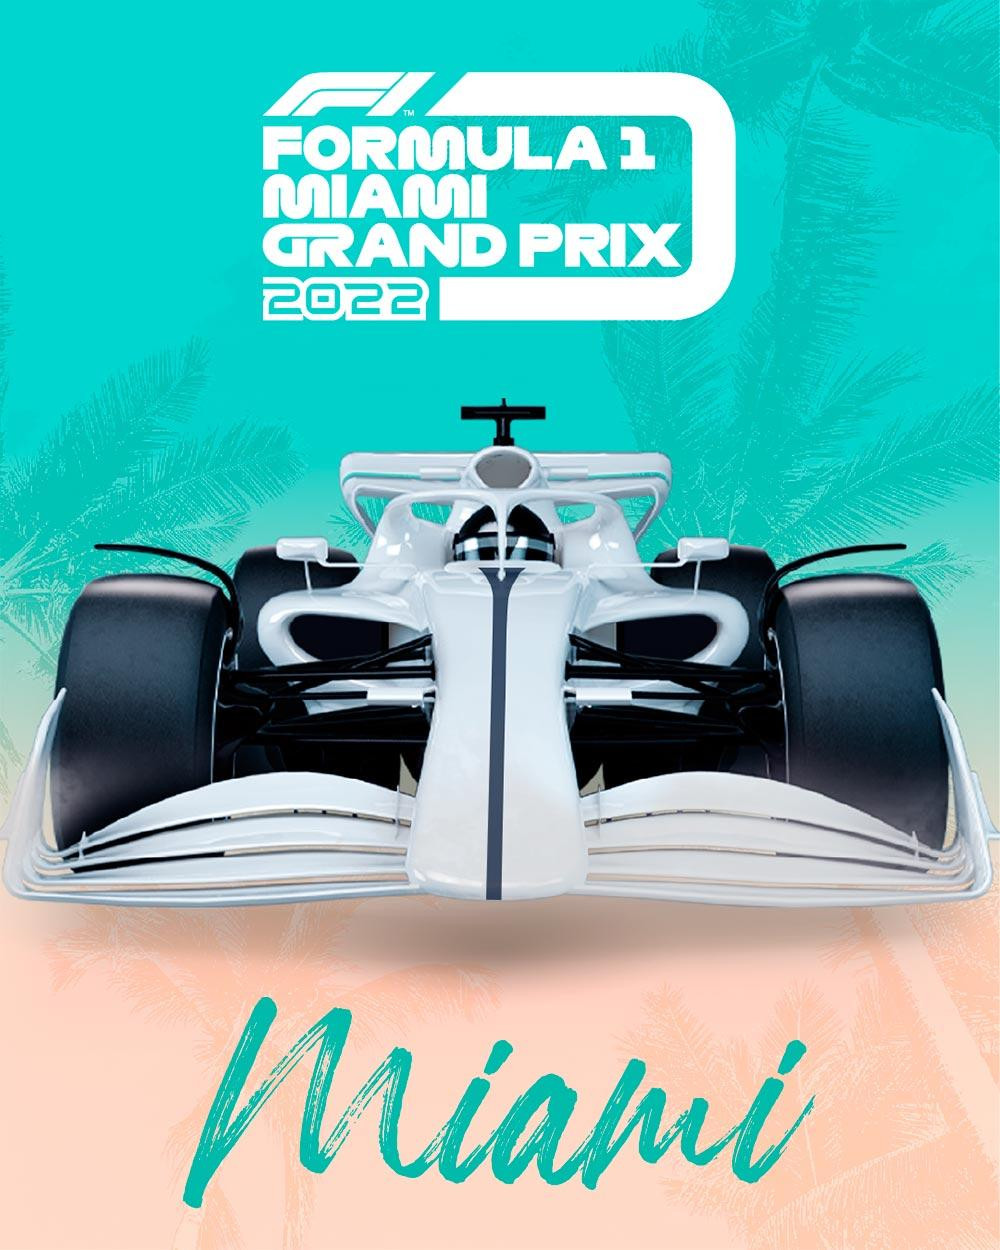 Fórmula 1, Gran Premio de Miami, Estados Unidos, automovilismo, Foto: Fórmula 1